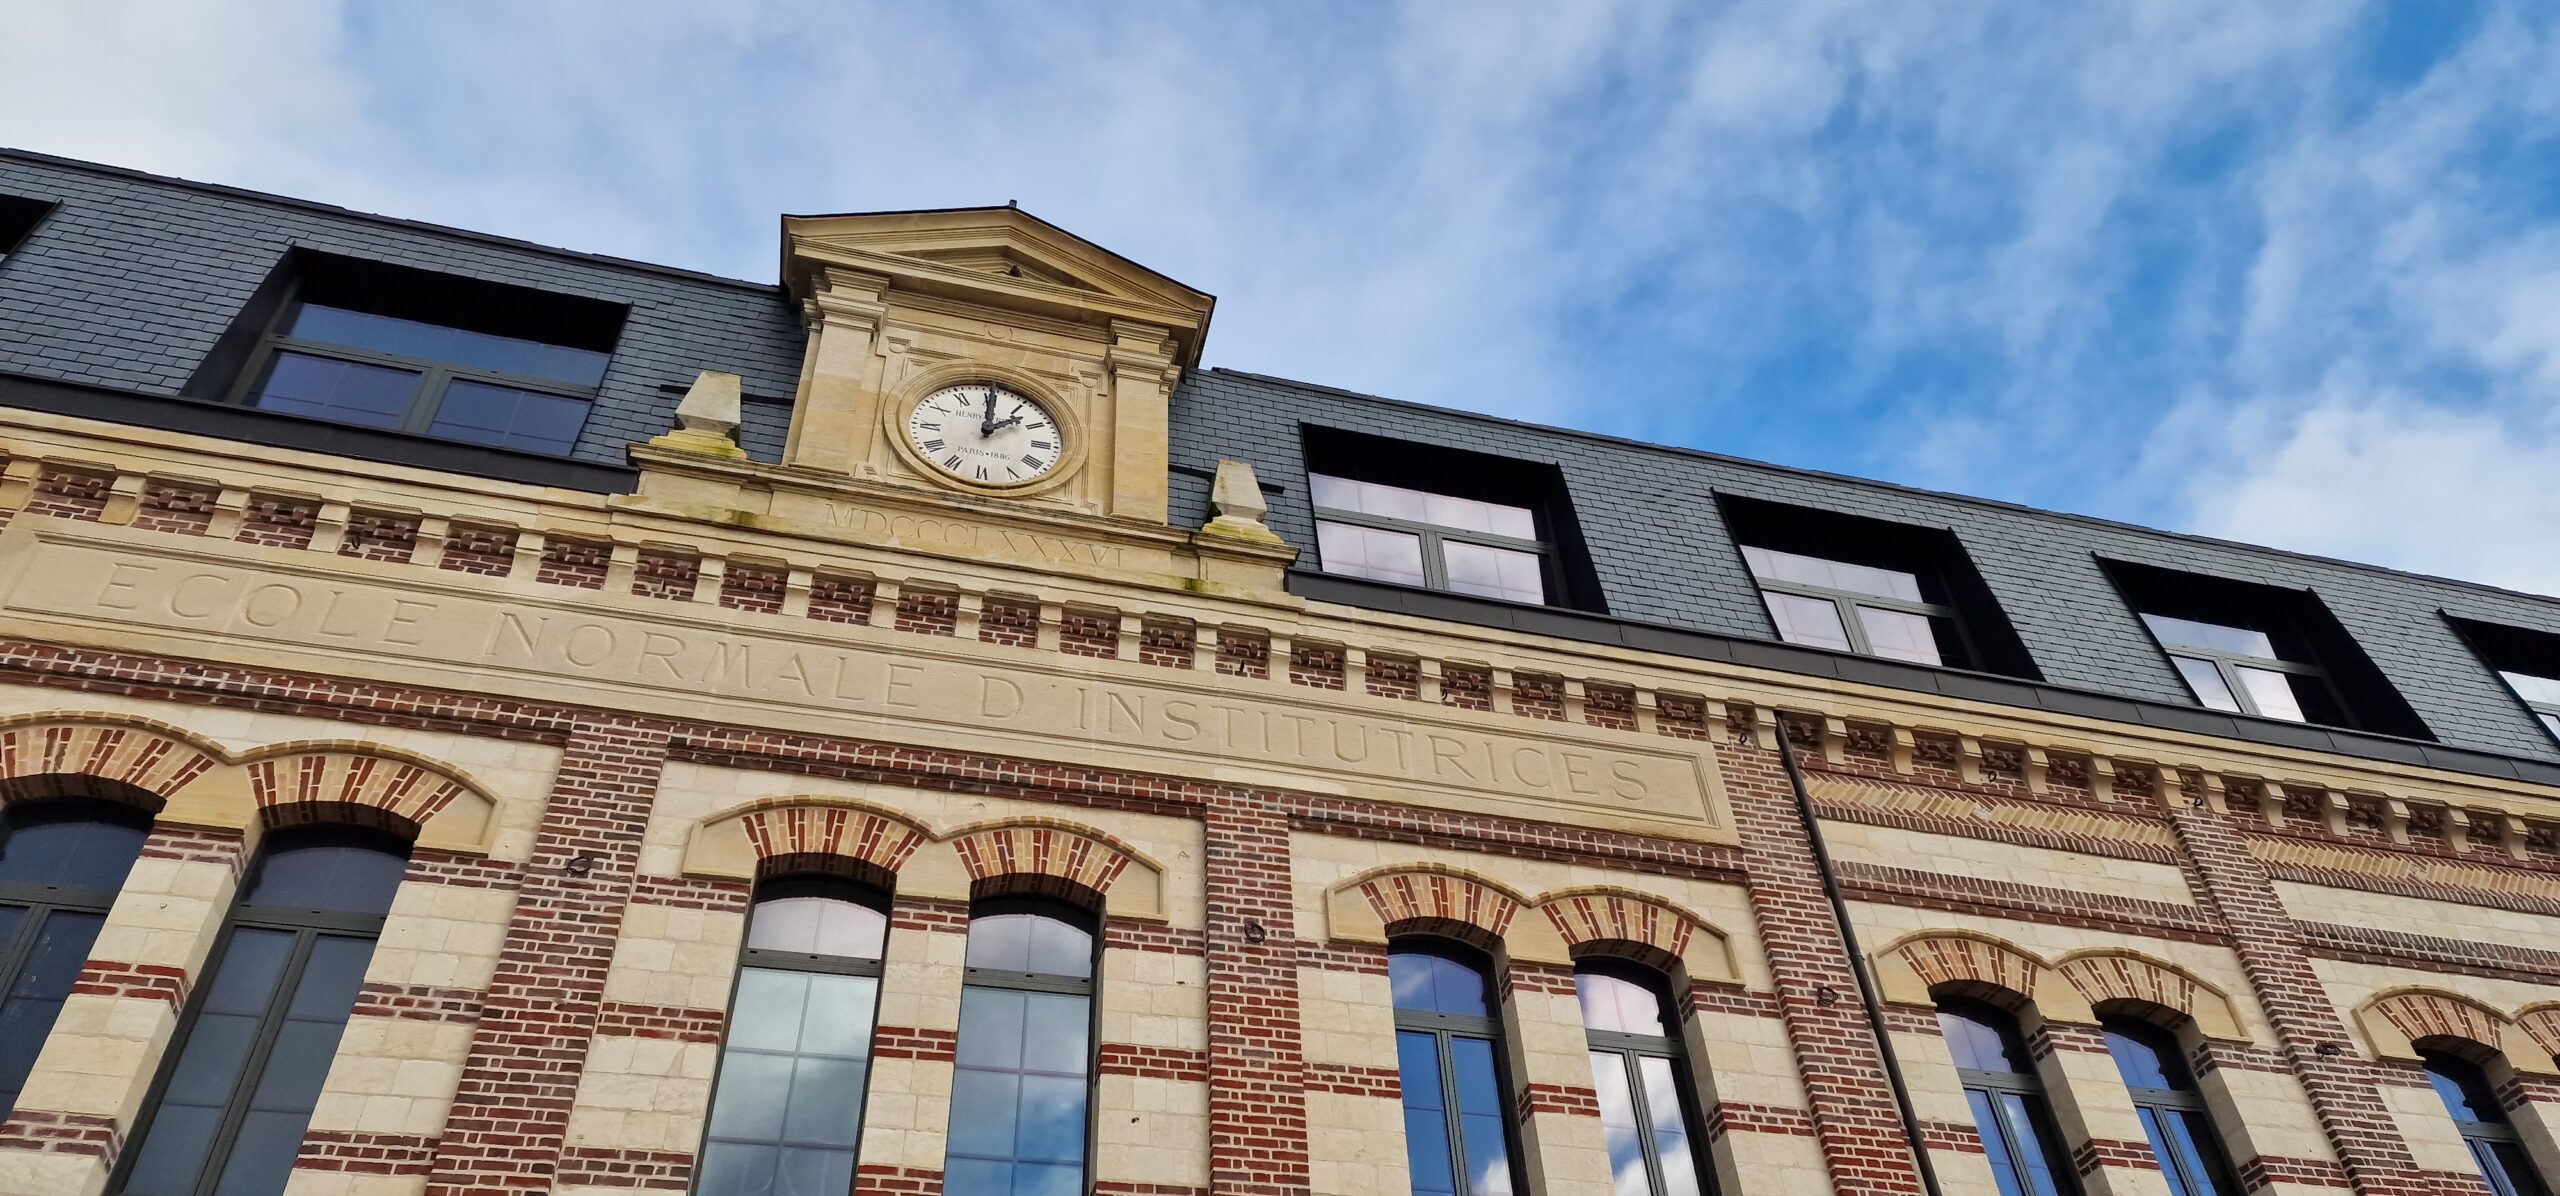 La façade de l'ancienne école Normale de Rouen avec son horloge historique rénovée. ©RNI